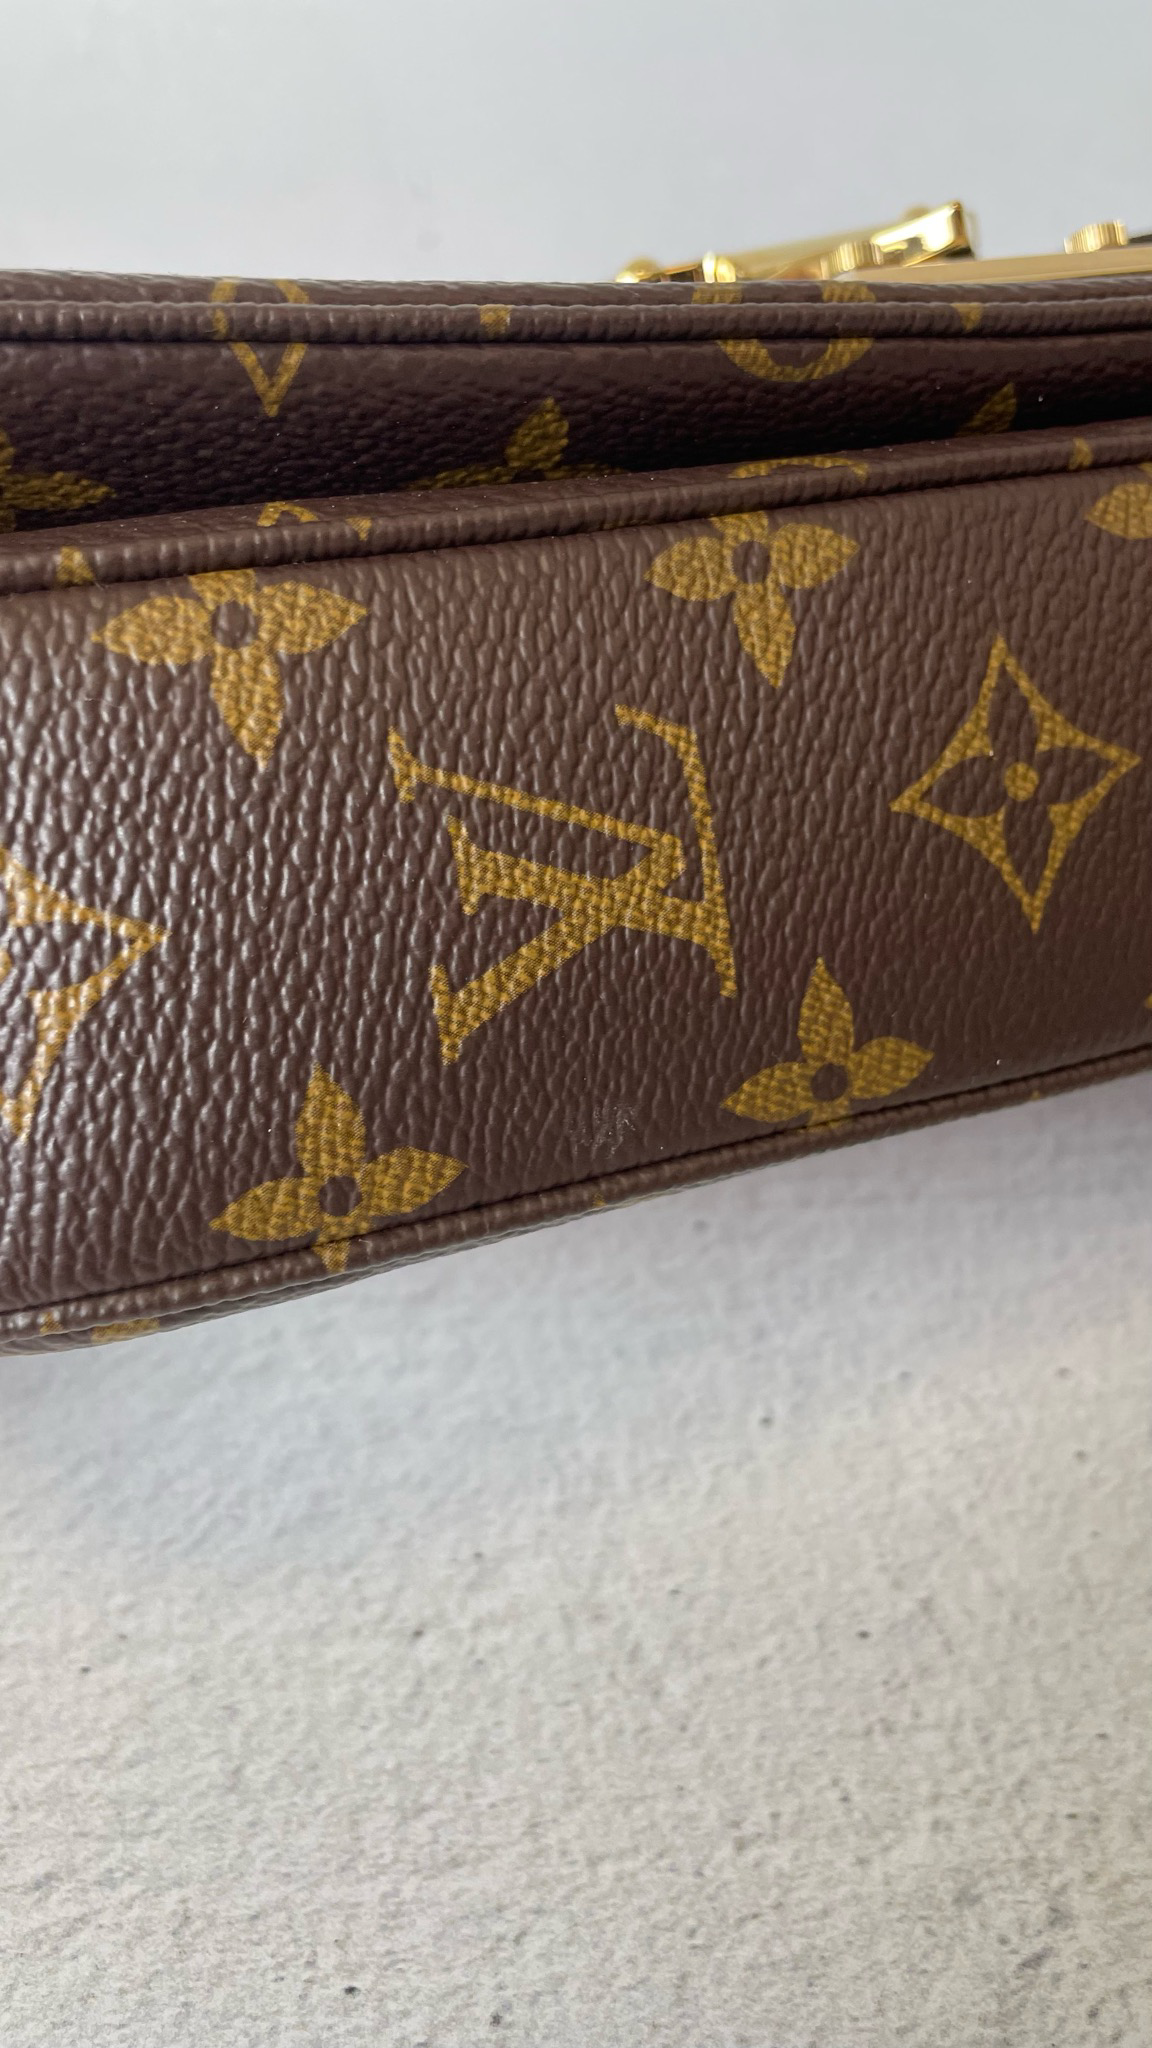 Сумка Louis Vuitton Marceau Bag Monogram Empreinte Creme купить в  интернет-магазине